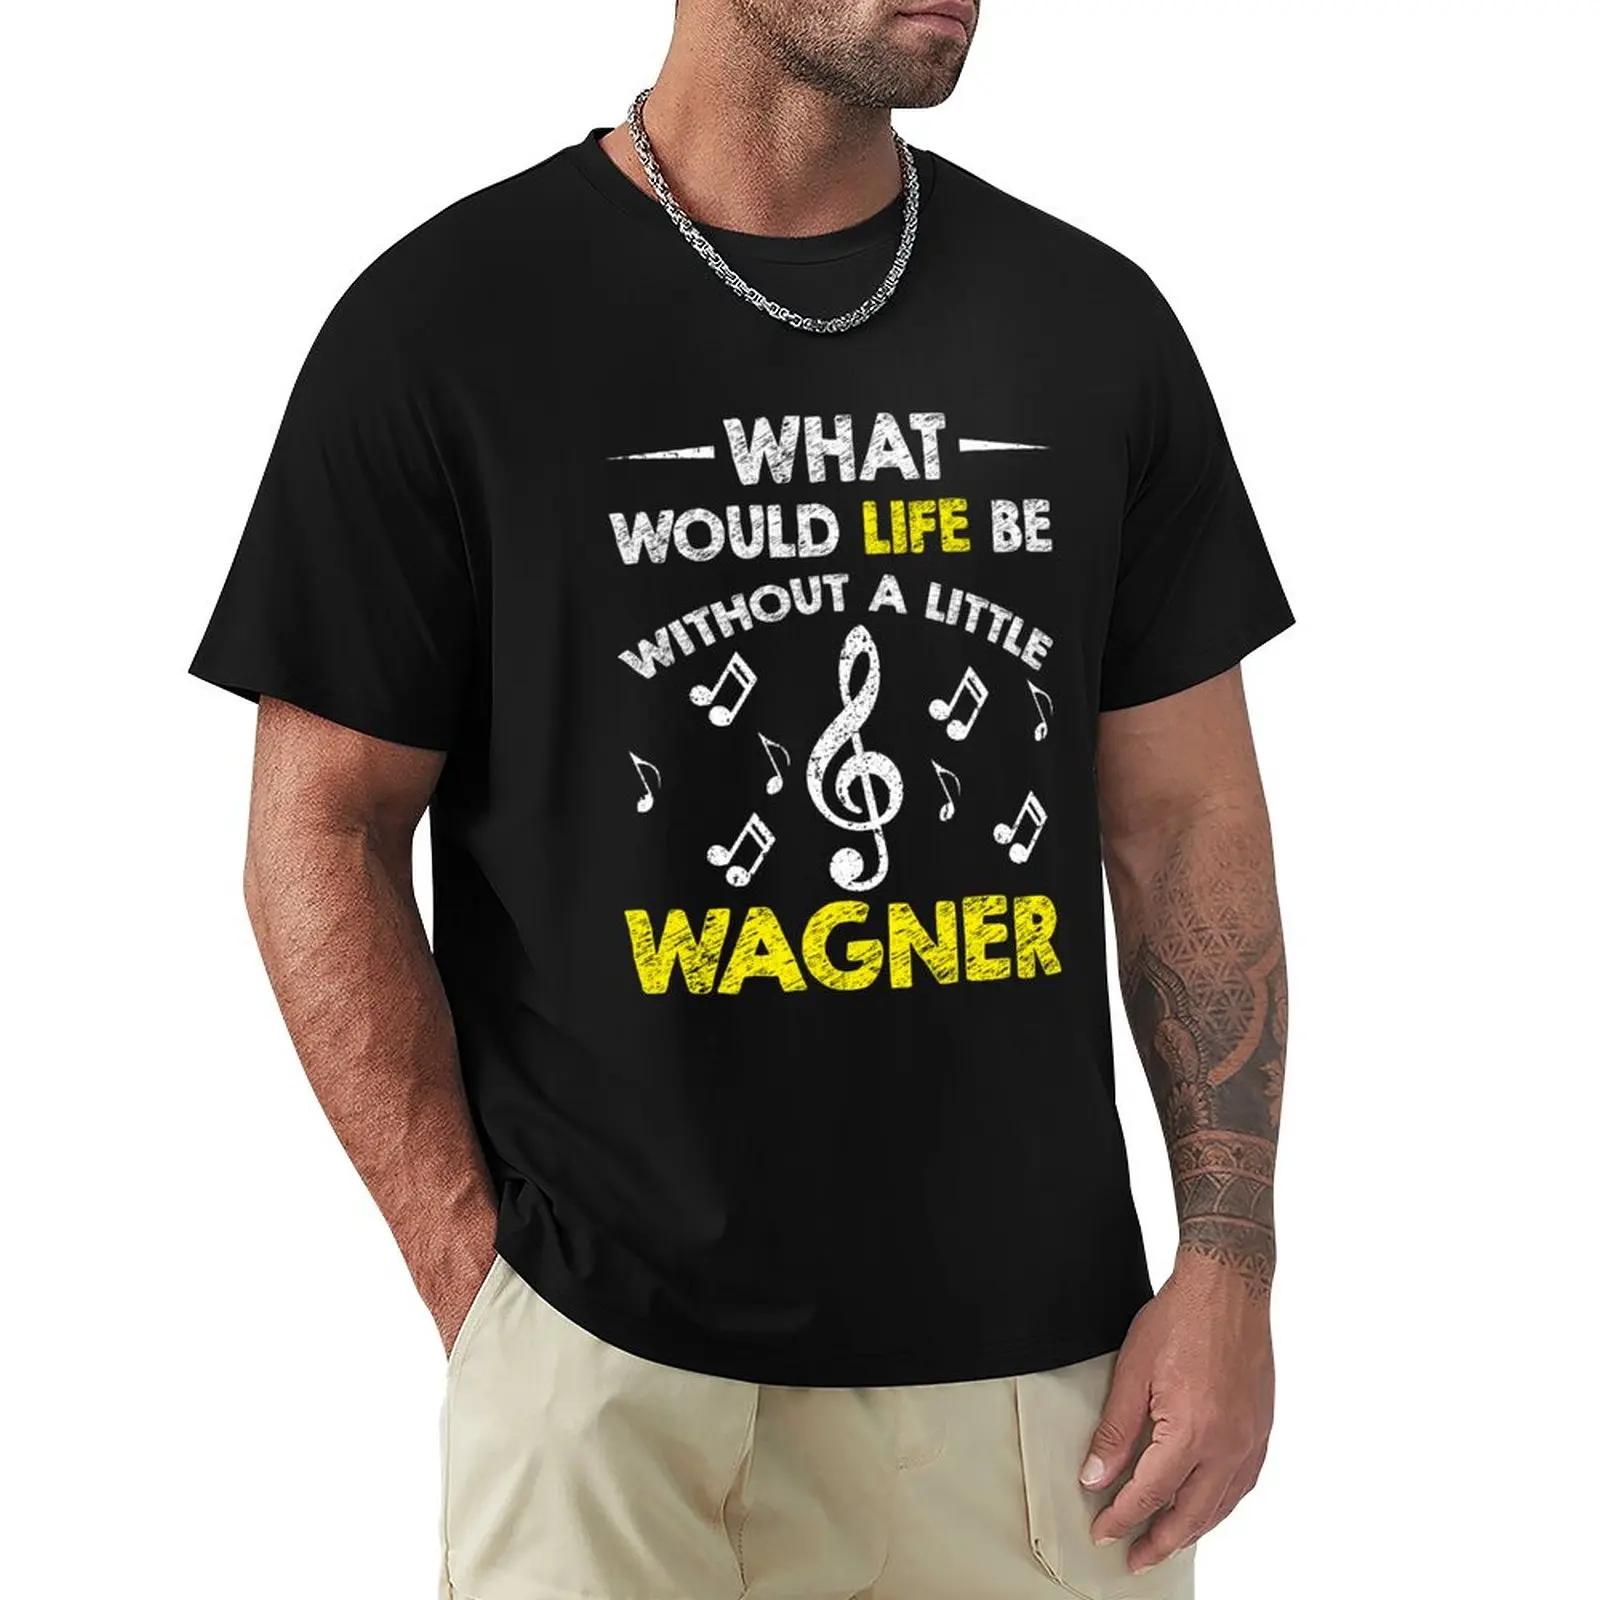 Купить футболку вагнер. Футболка Вагнер. Футболка Wagner TM. Группа Вагнера футболка. Толстовки Вагнер мужские.